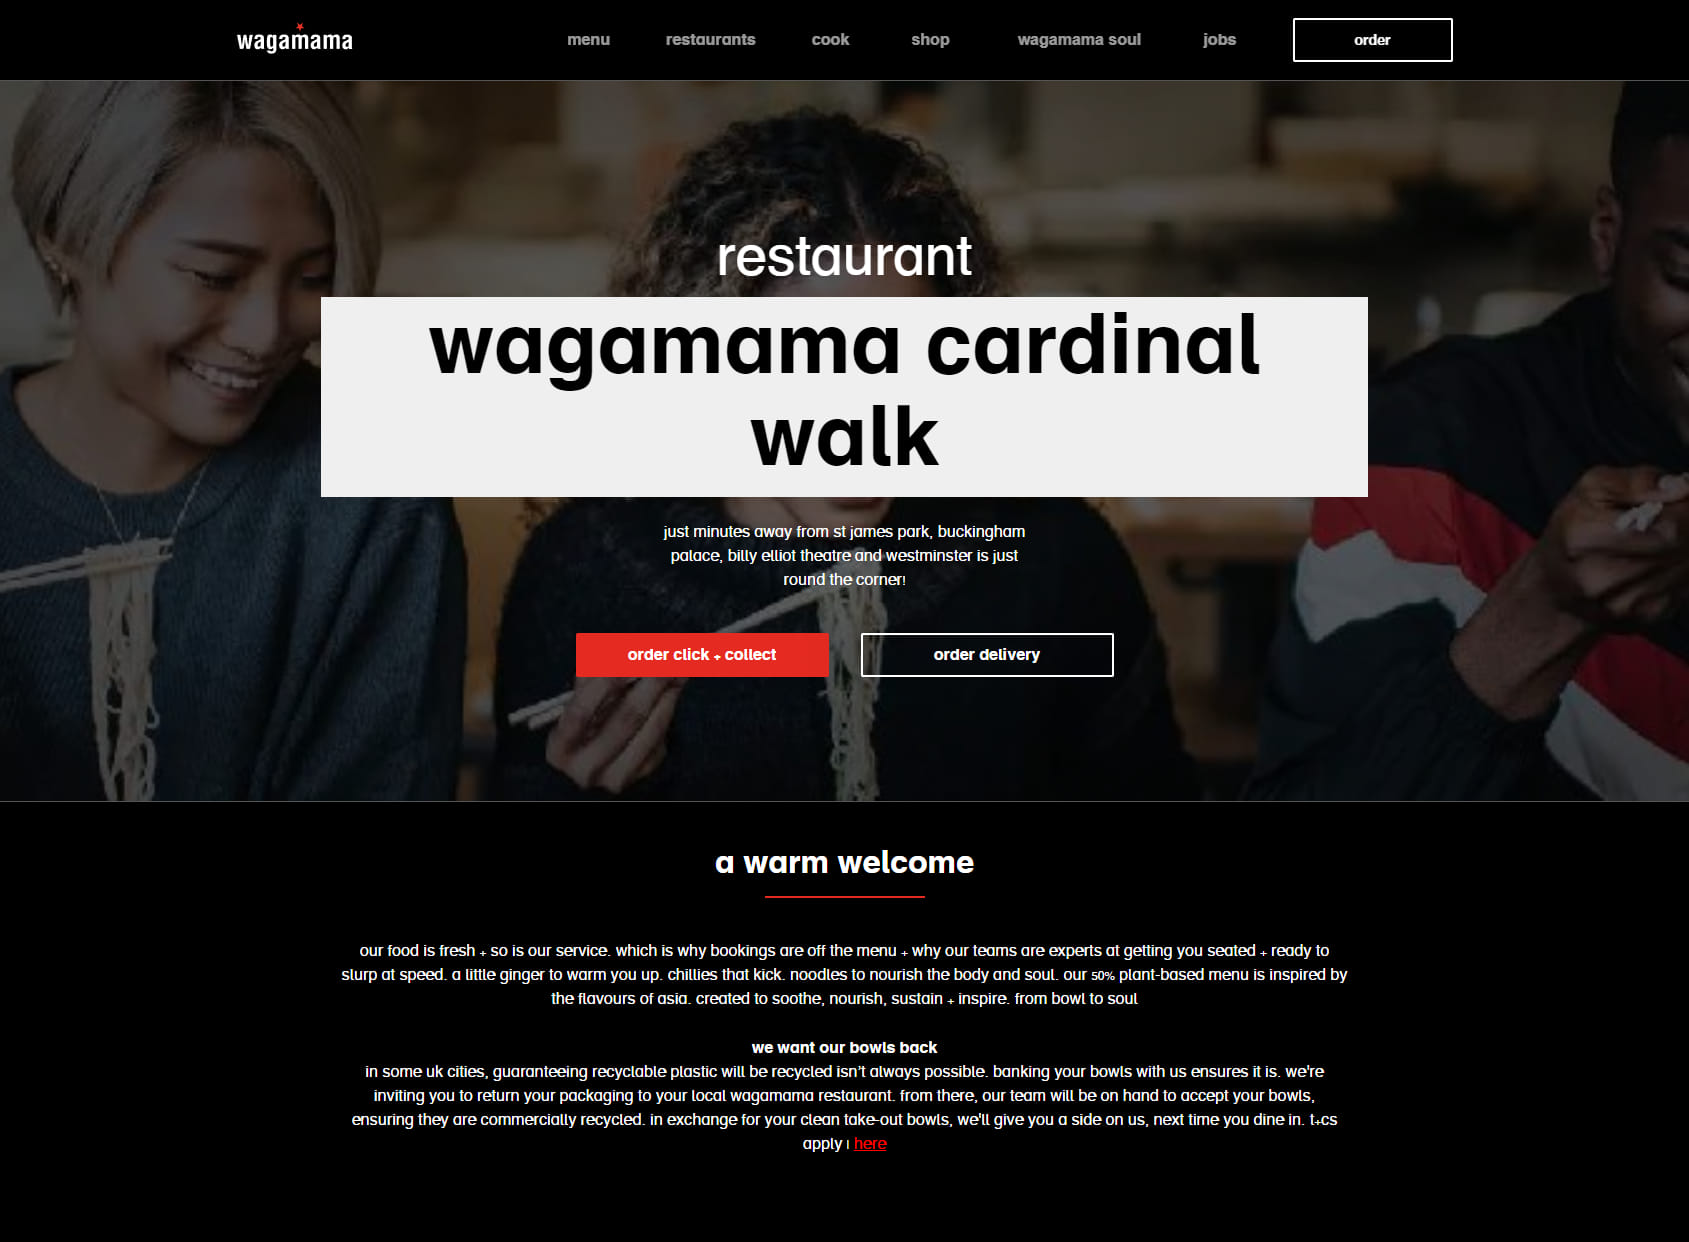 wagamama cardinal walk